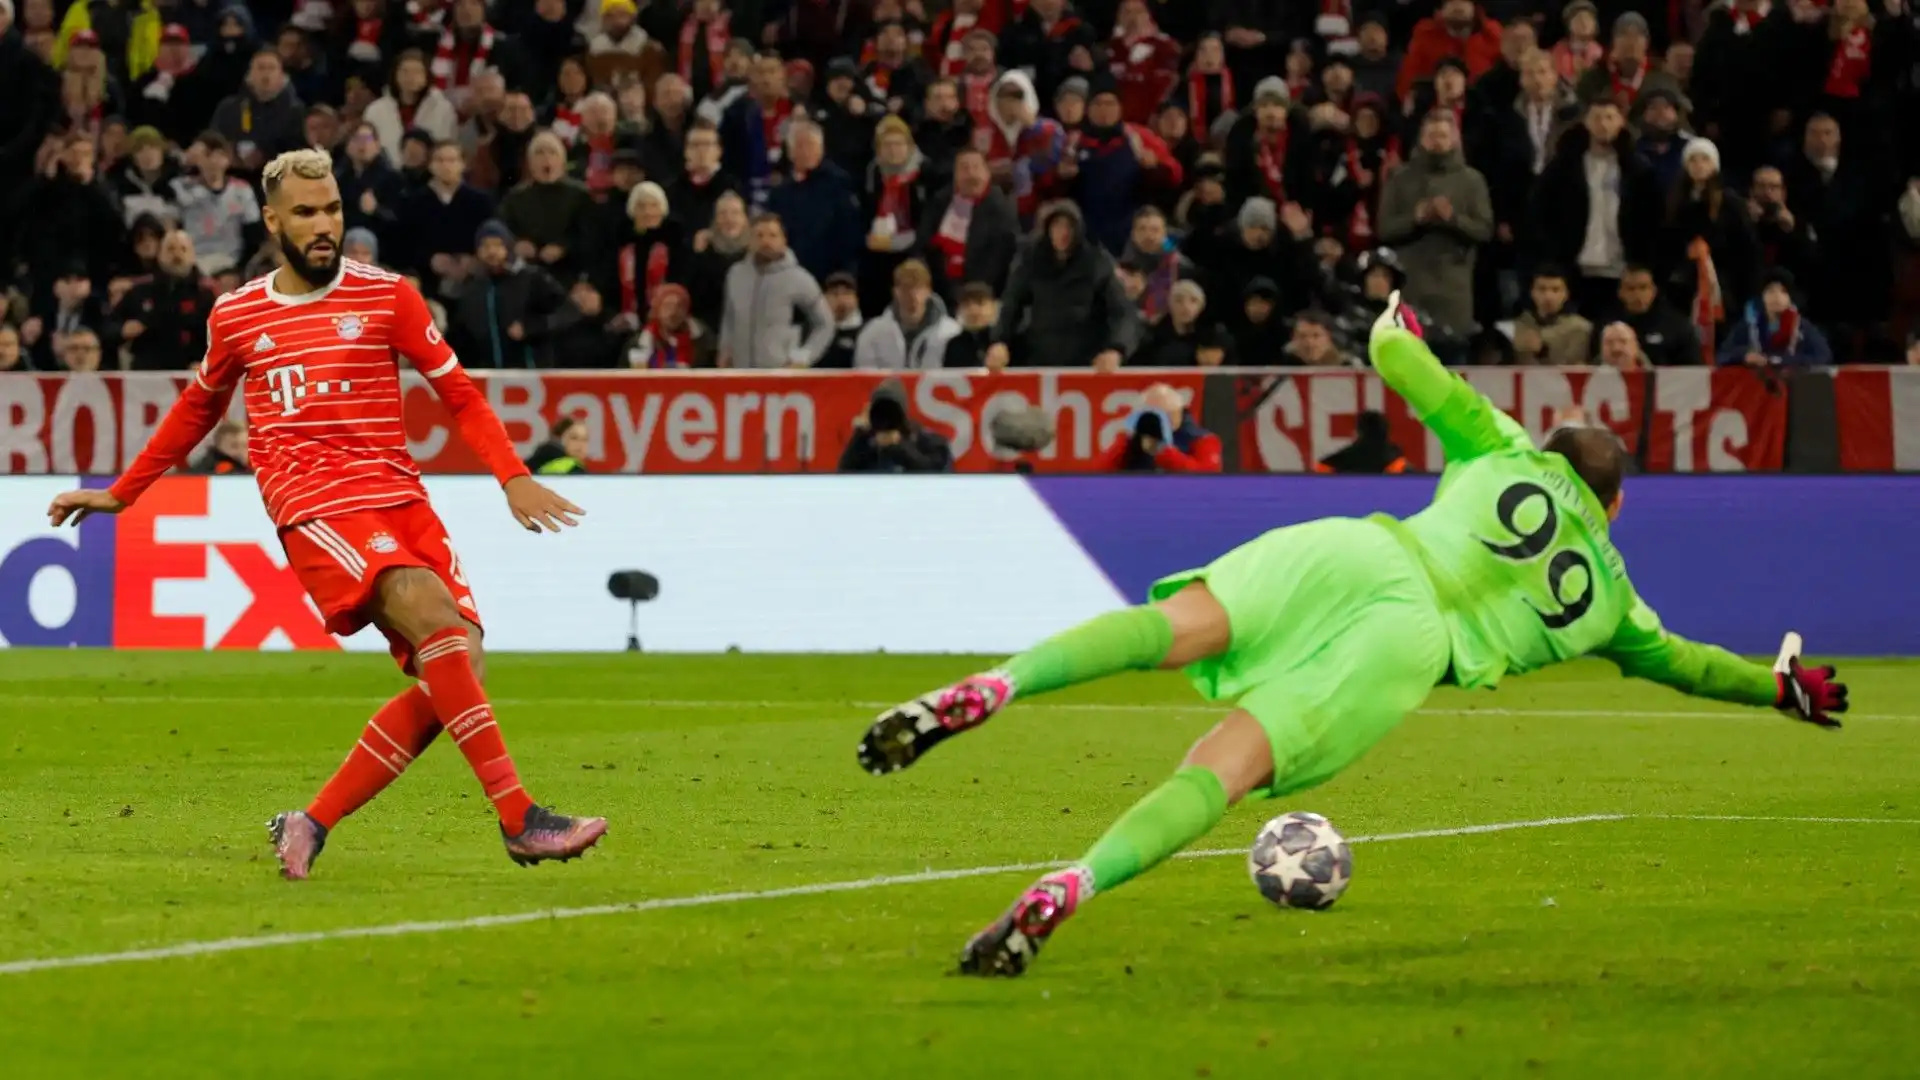 Dopo 4 anni l'esperienza di Eric Maxim Choupo-Moting al Bayern Monaco potrebbe essere giunta al termine